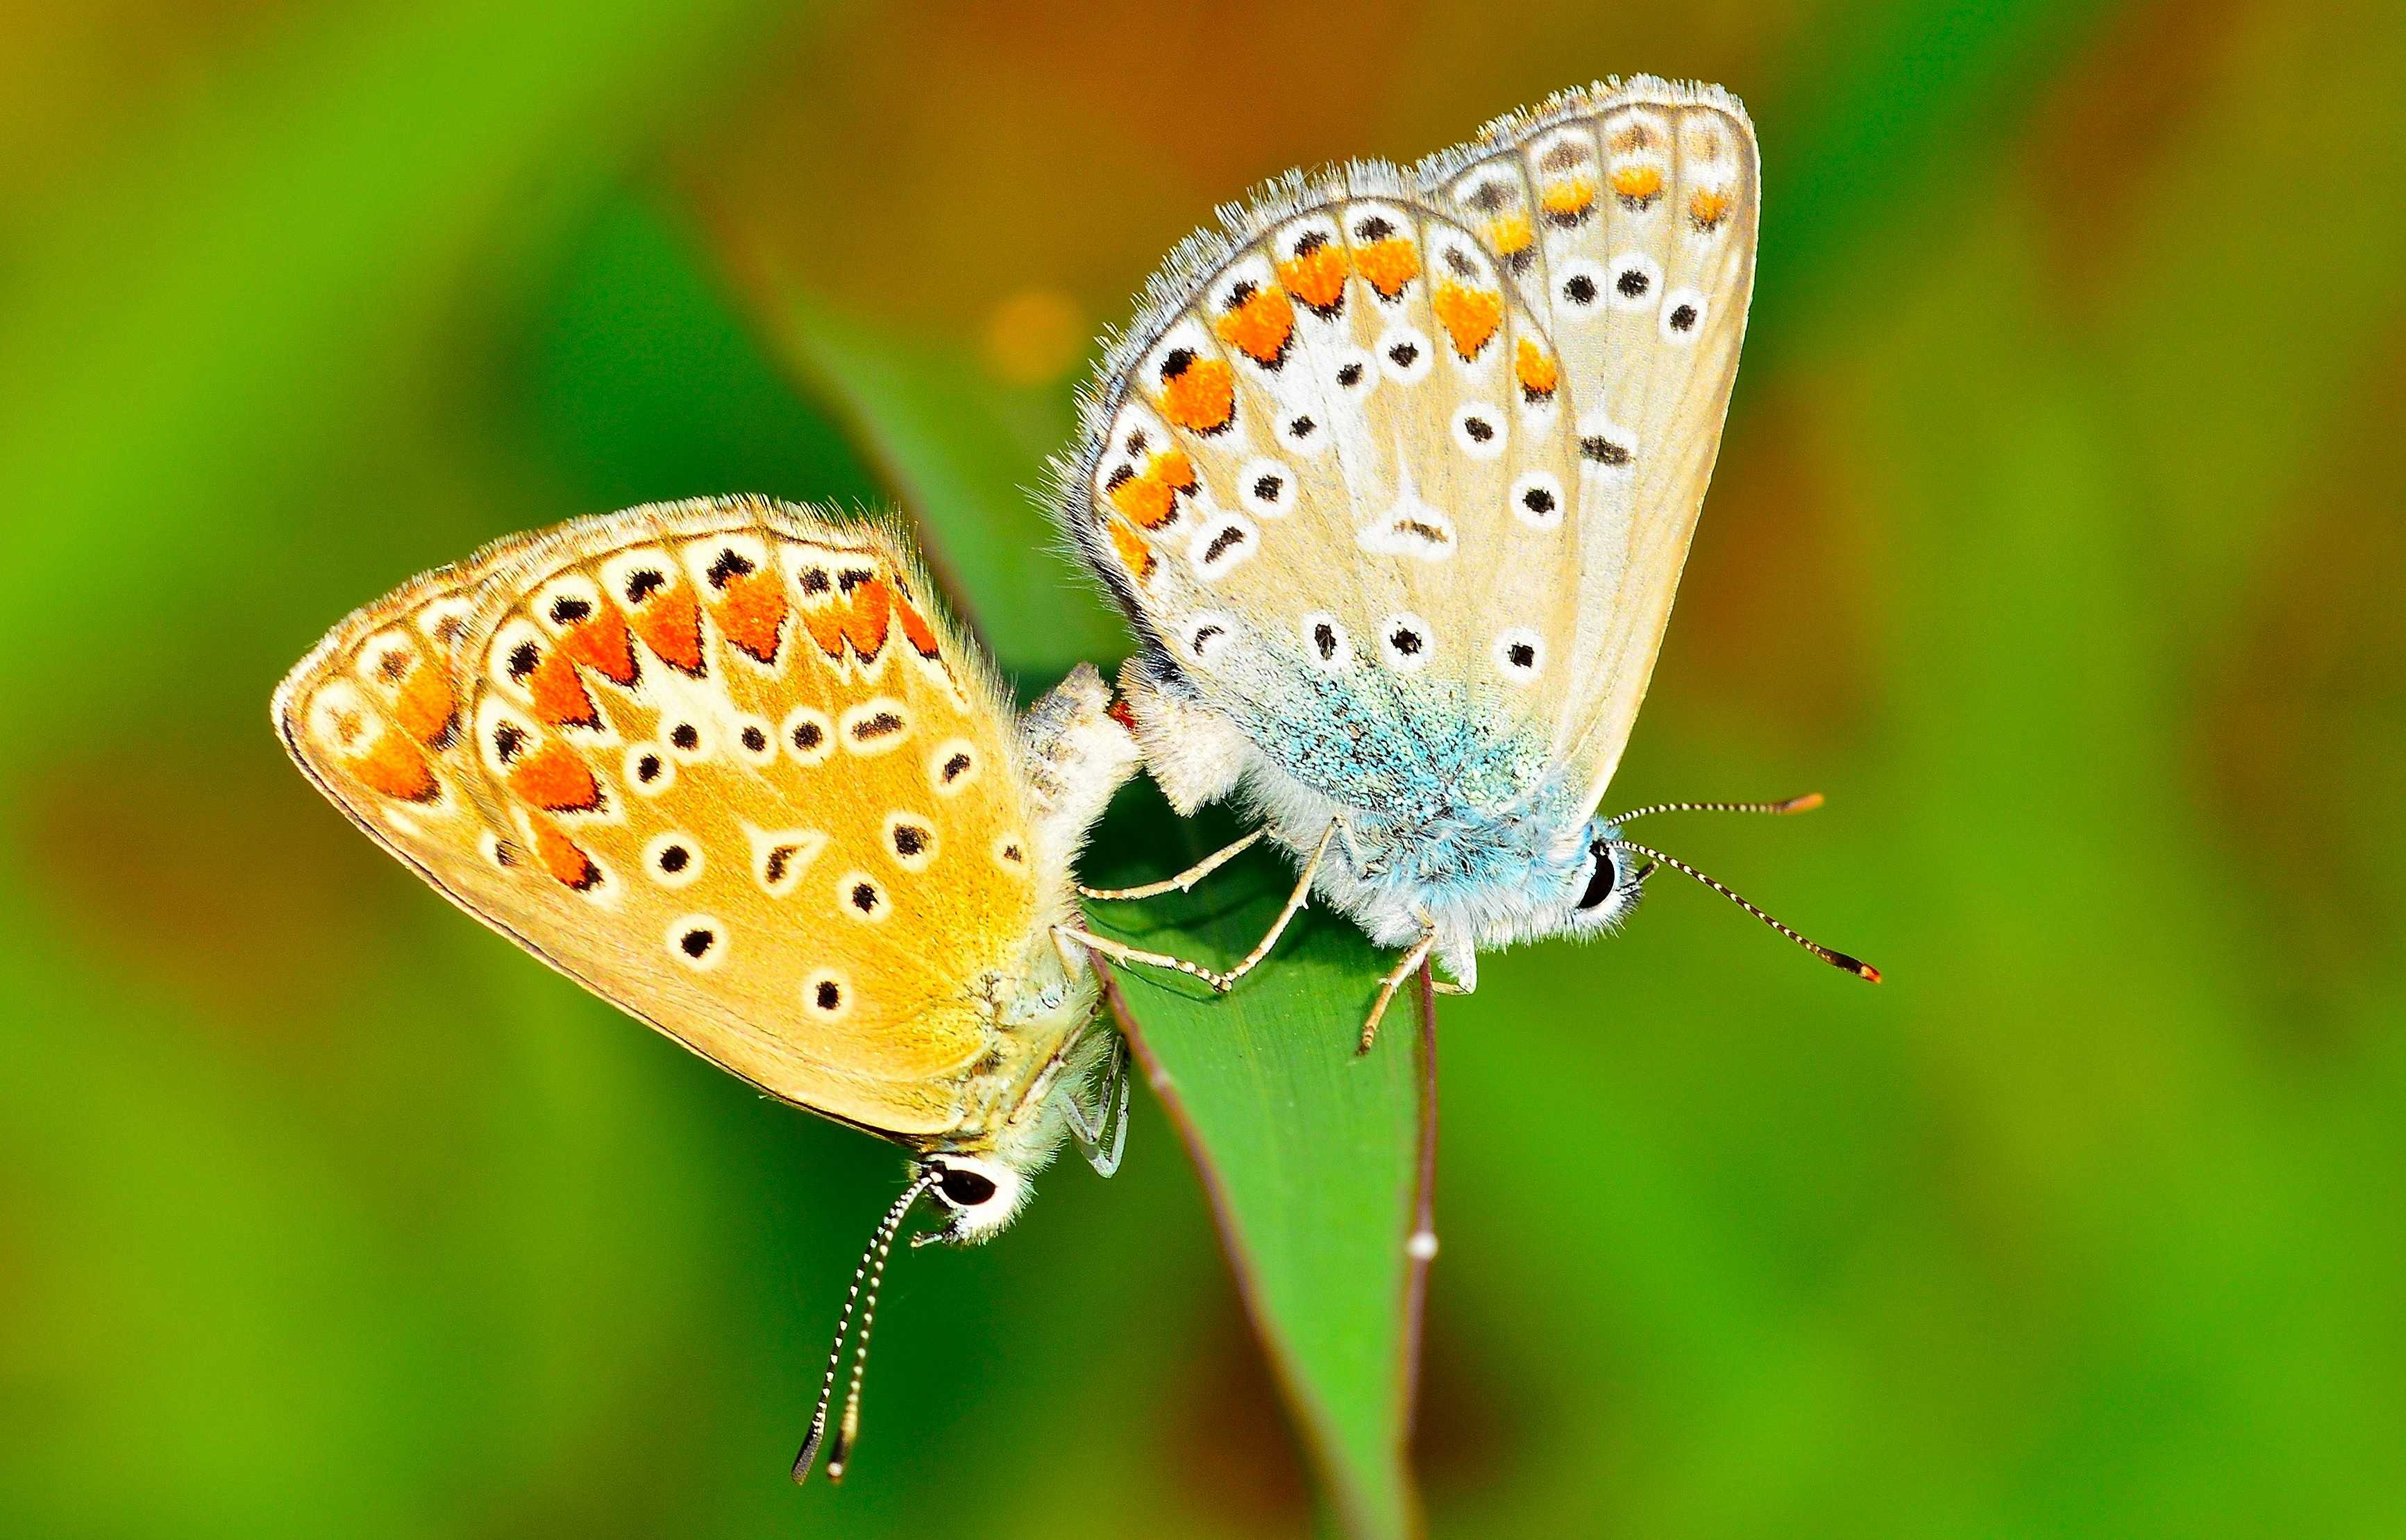 Описание бабочки: стадии развития, внешний вид и питание